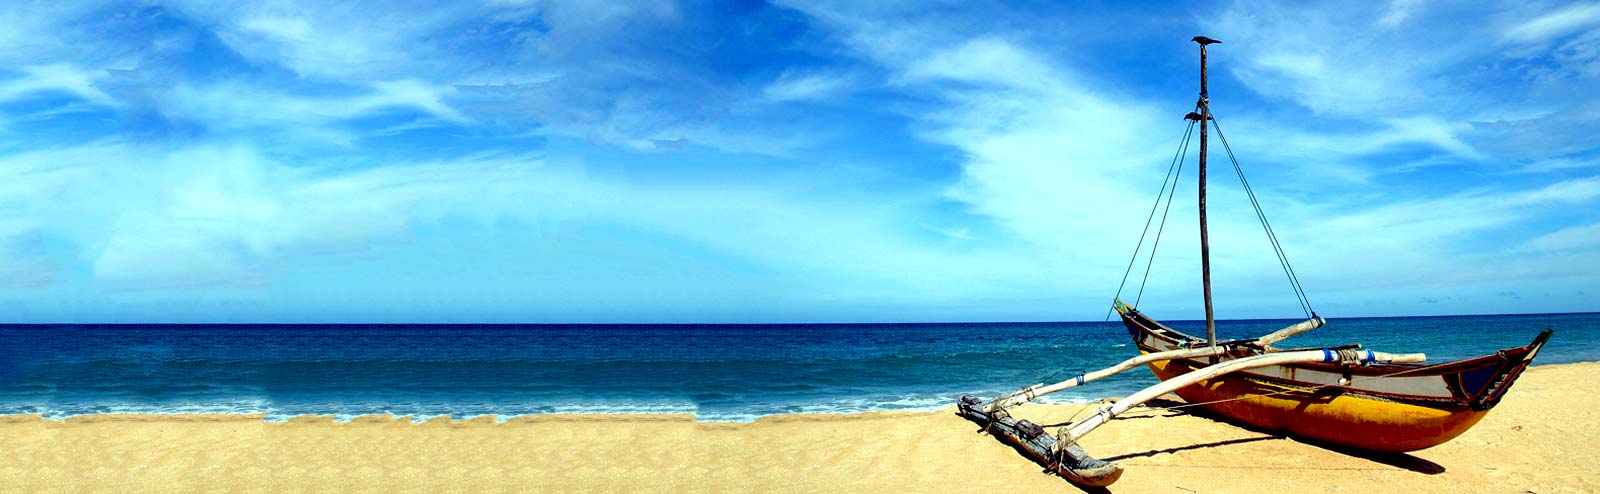 Sri-Lanka-Travel-And-Tourism-Beaches